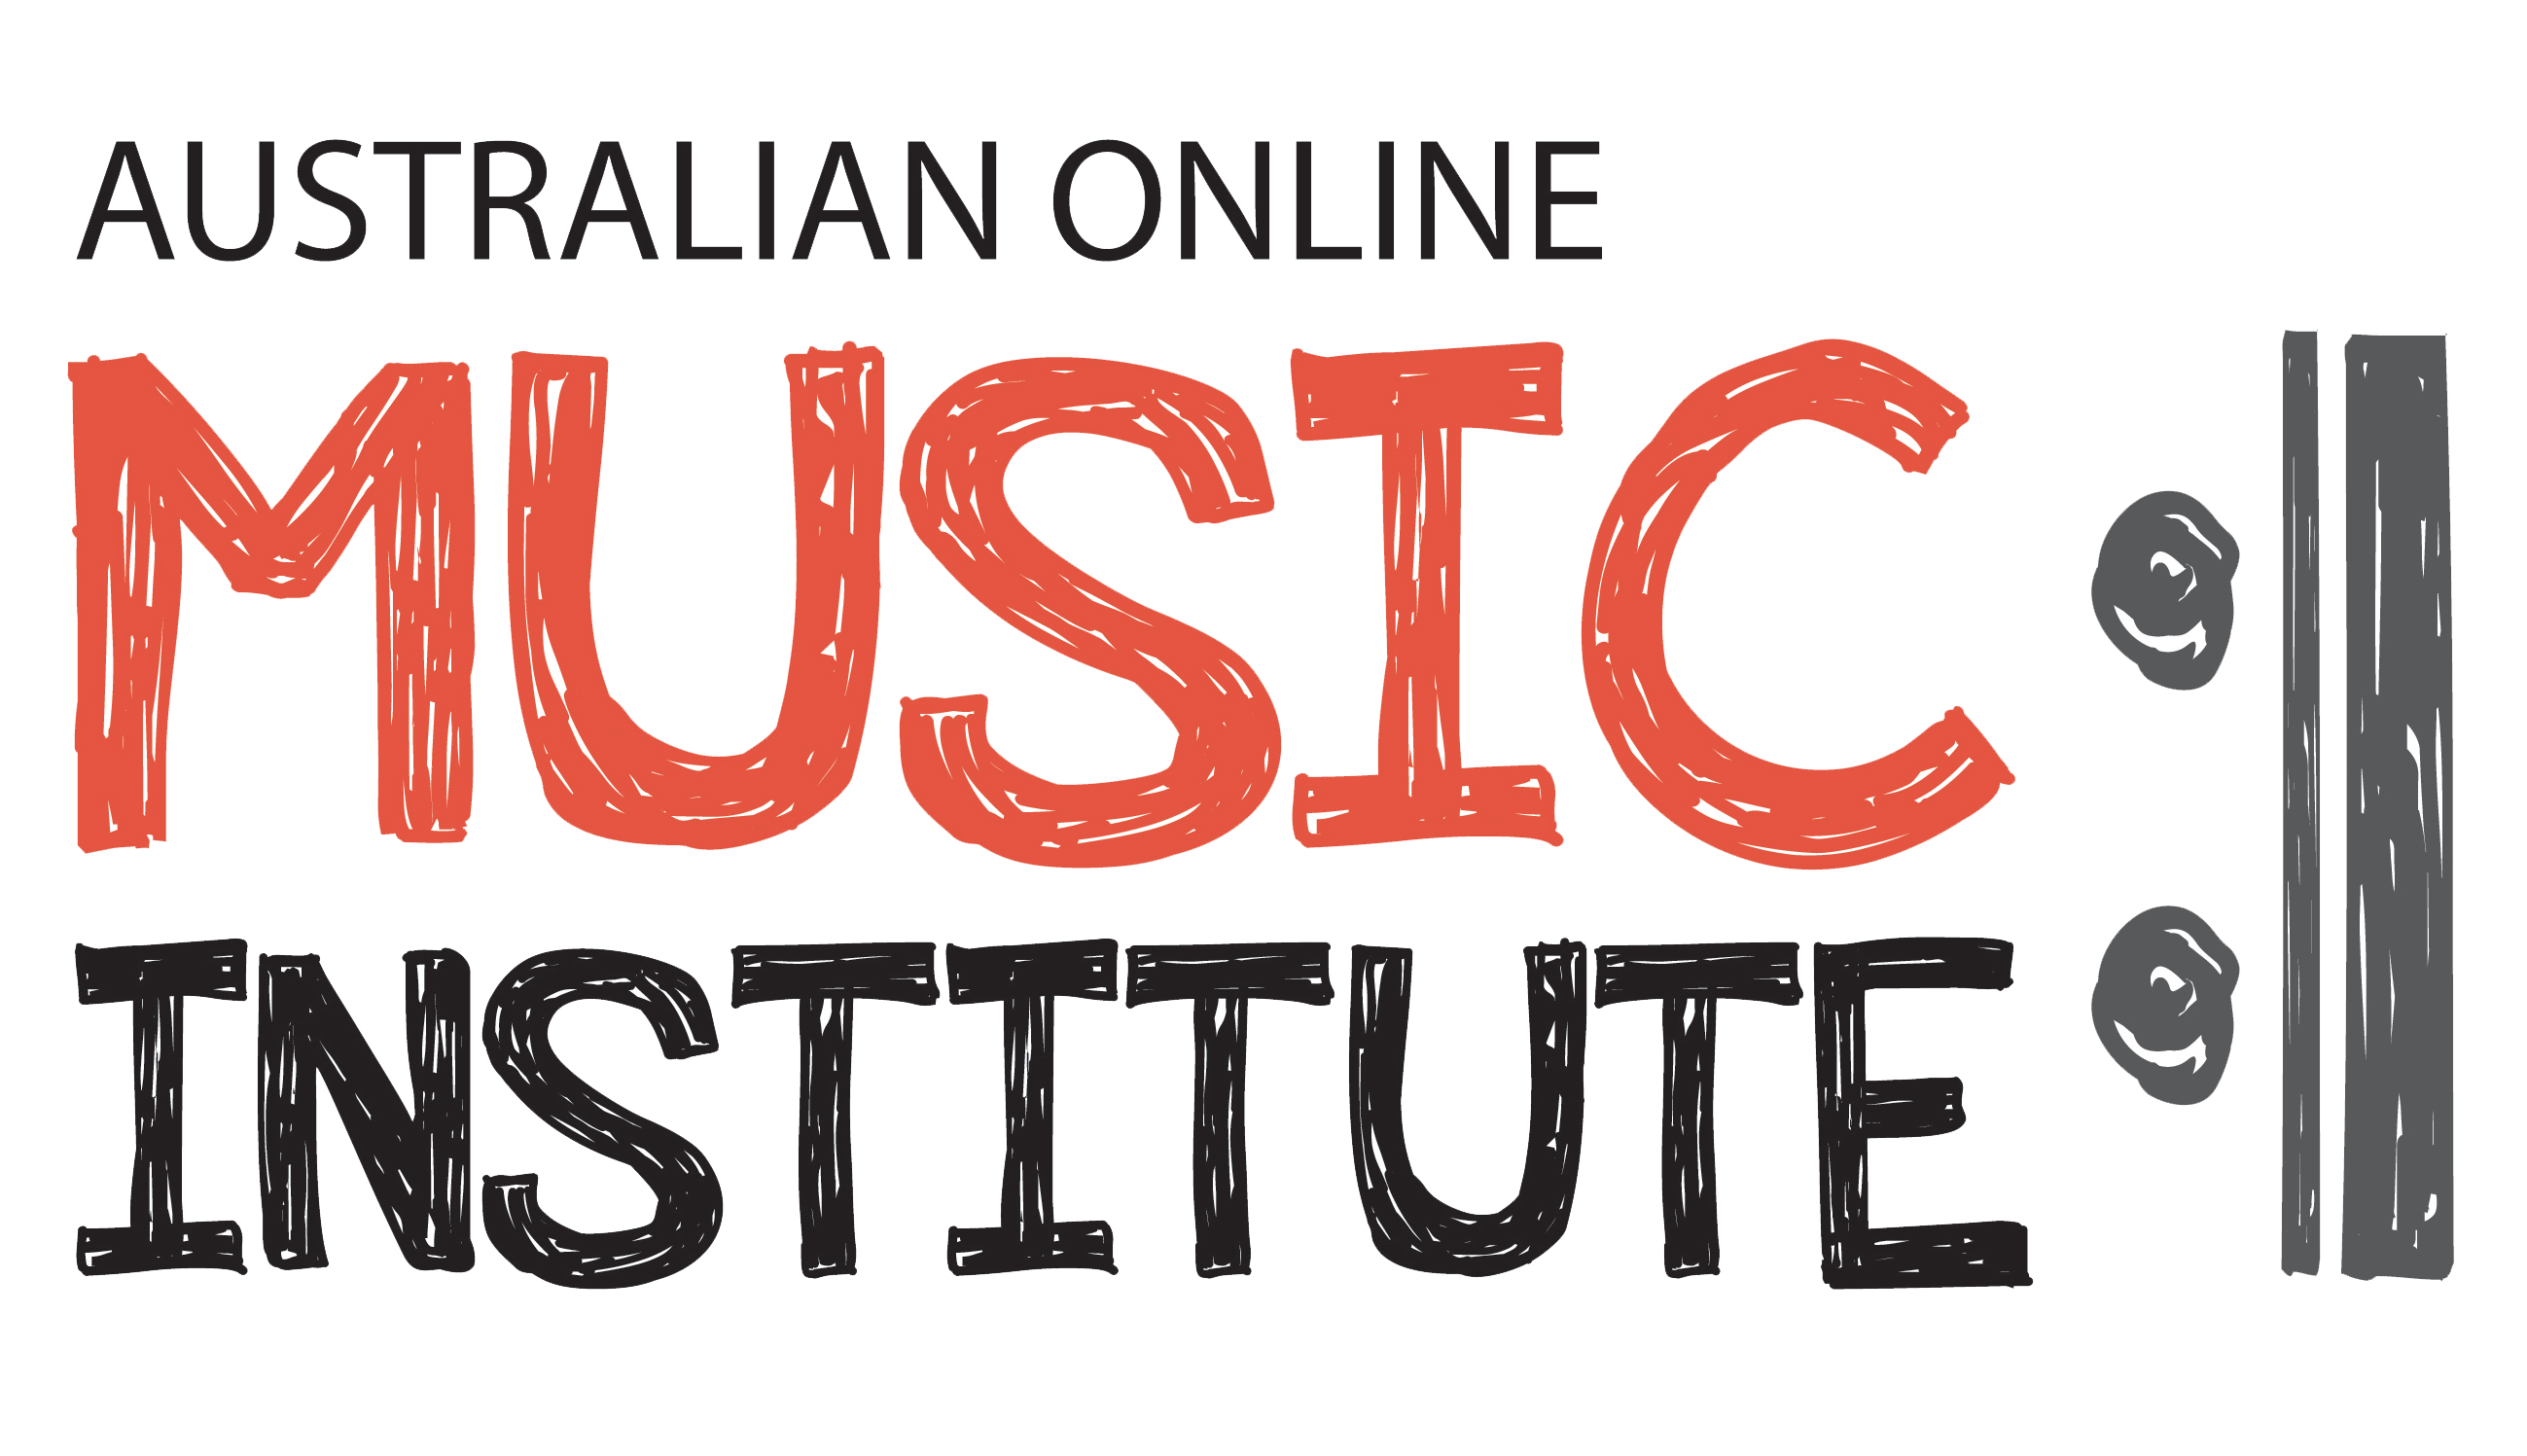 Australian Online Music Institute